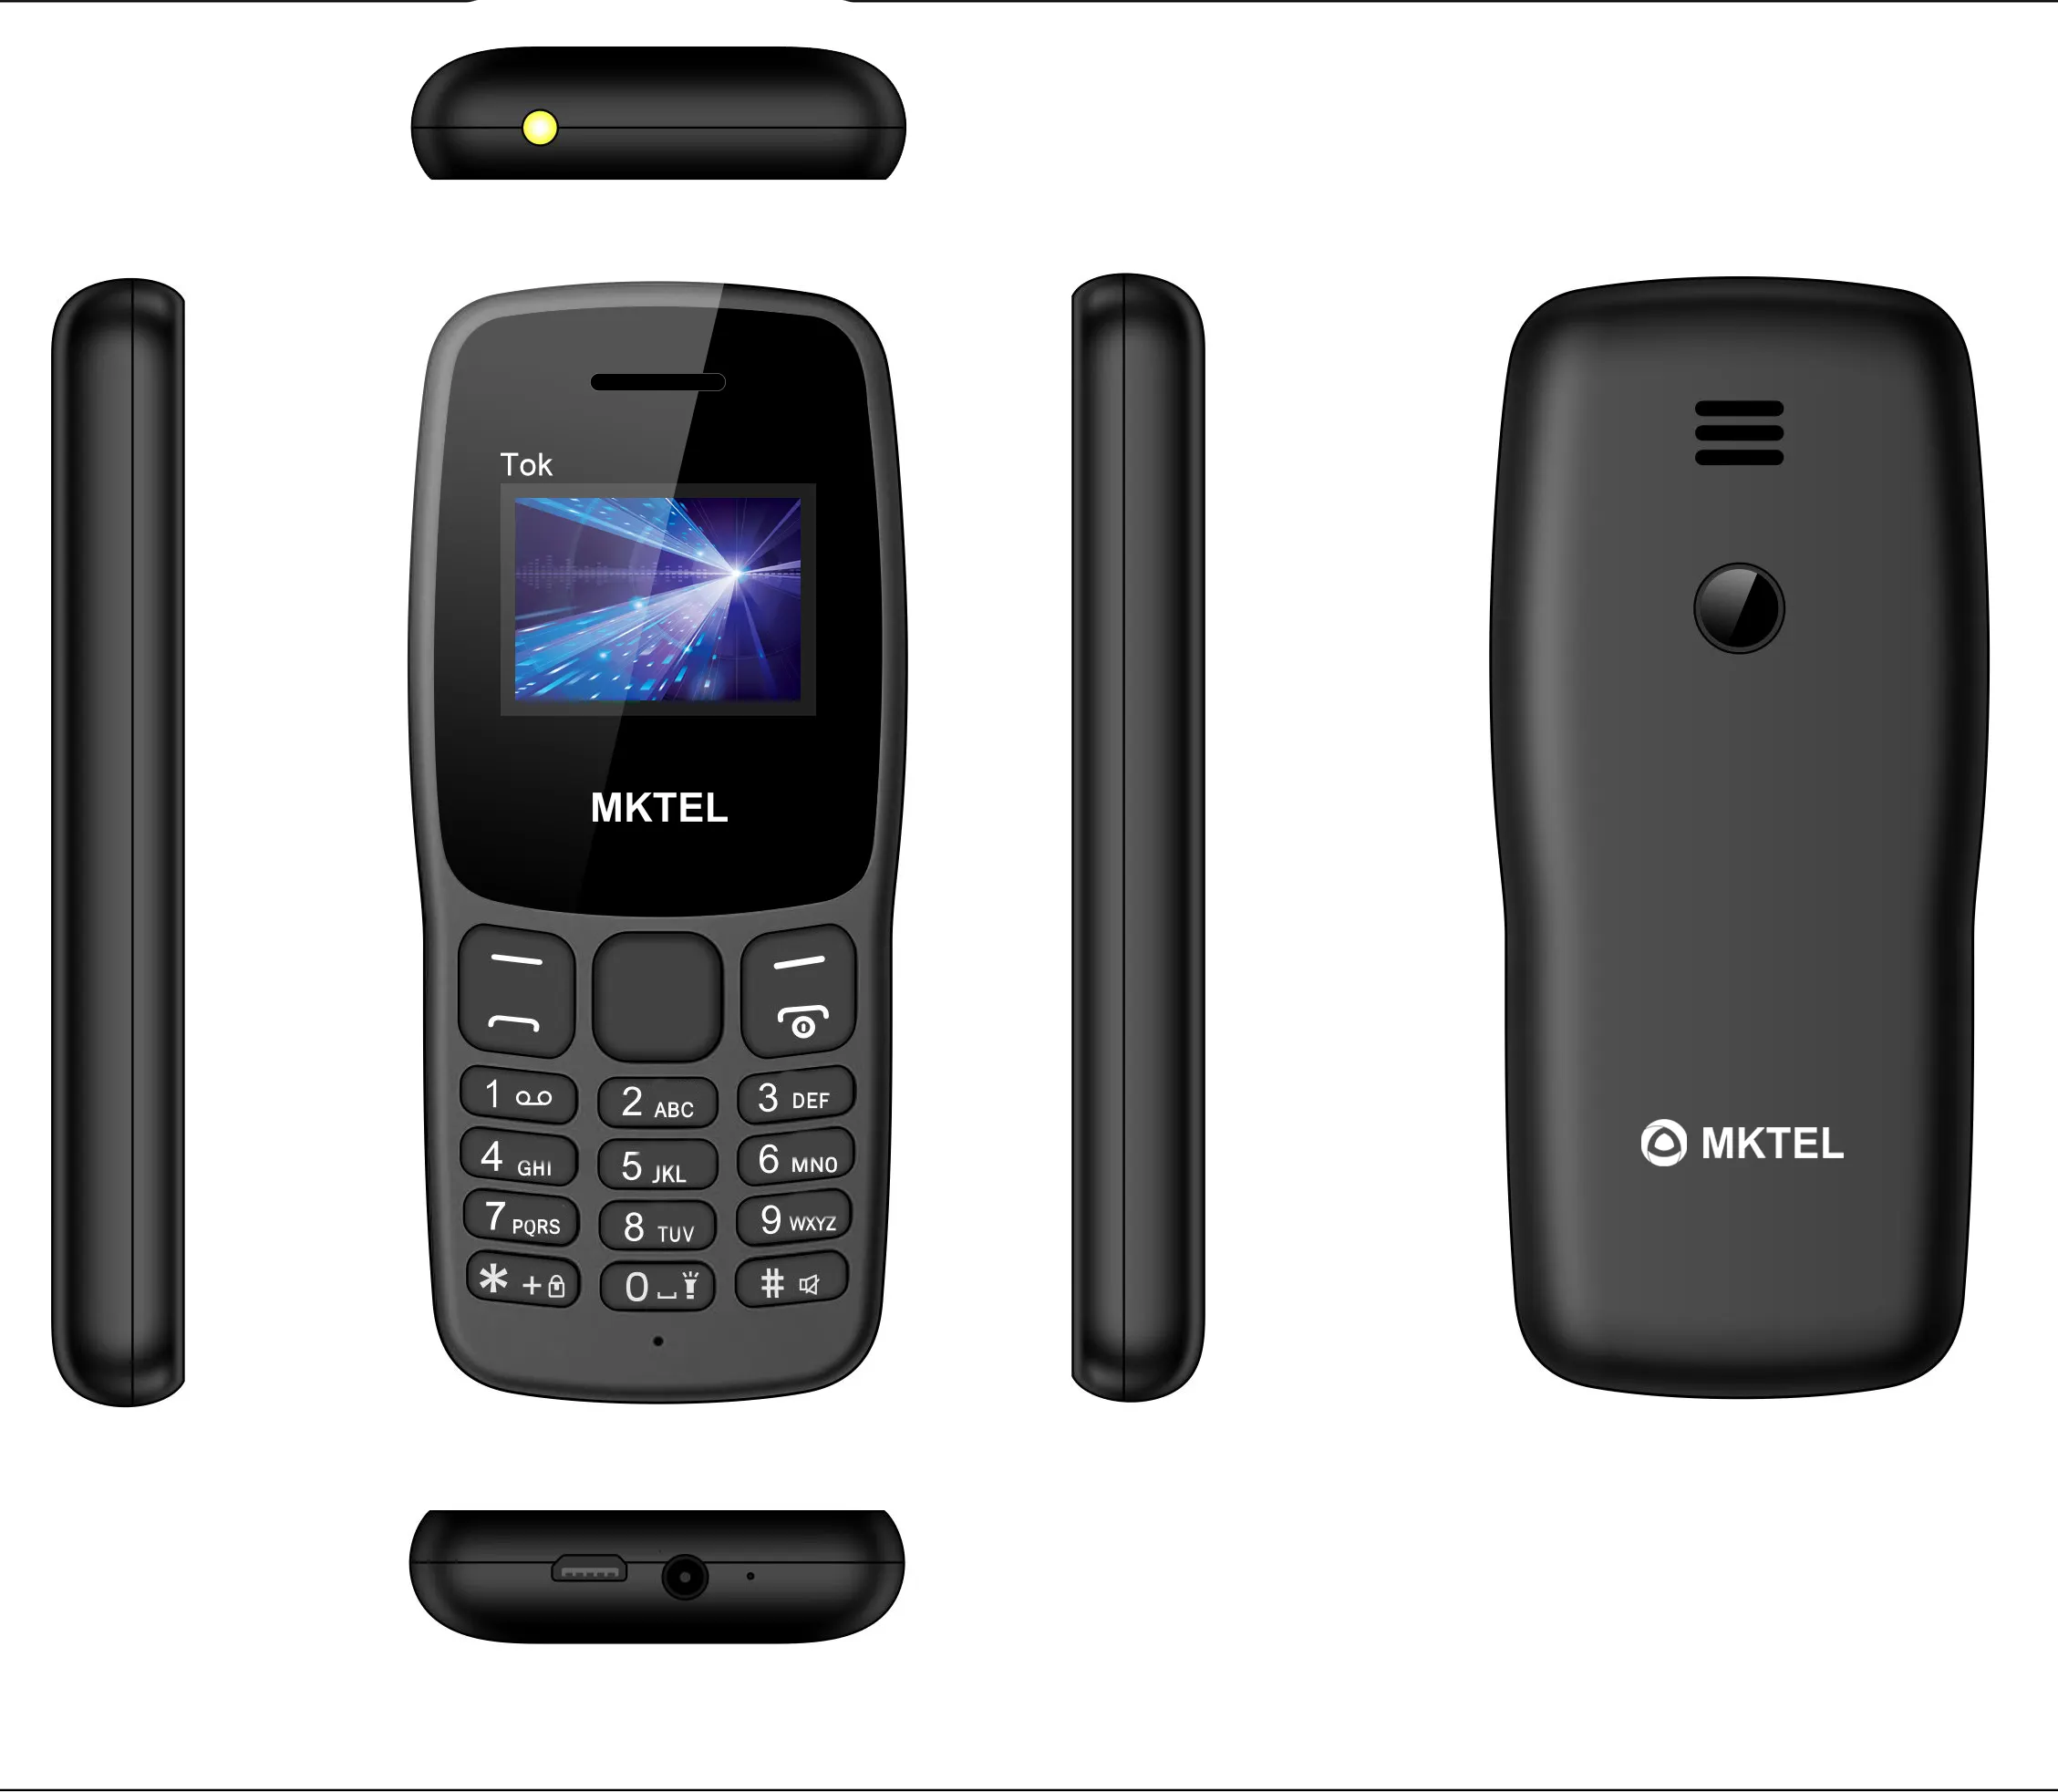 Teléfono Móvil de 1,44 pulgadas sin cámara, Tarjeta SIM Dual, básico, reproductor MP3 y MP4, en stock, precio muy bajo